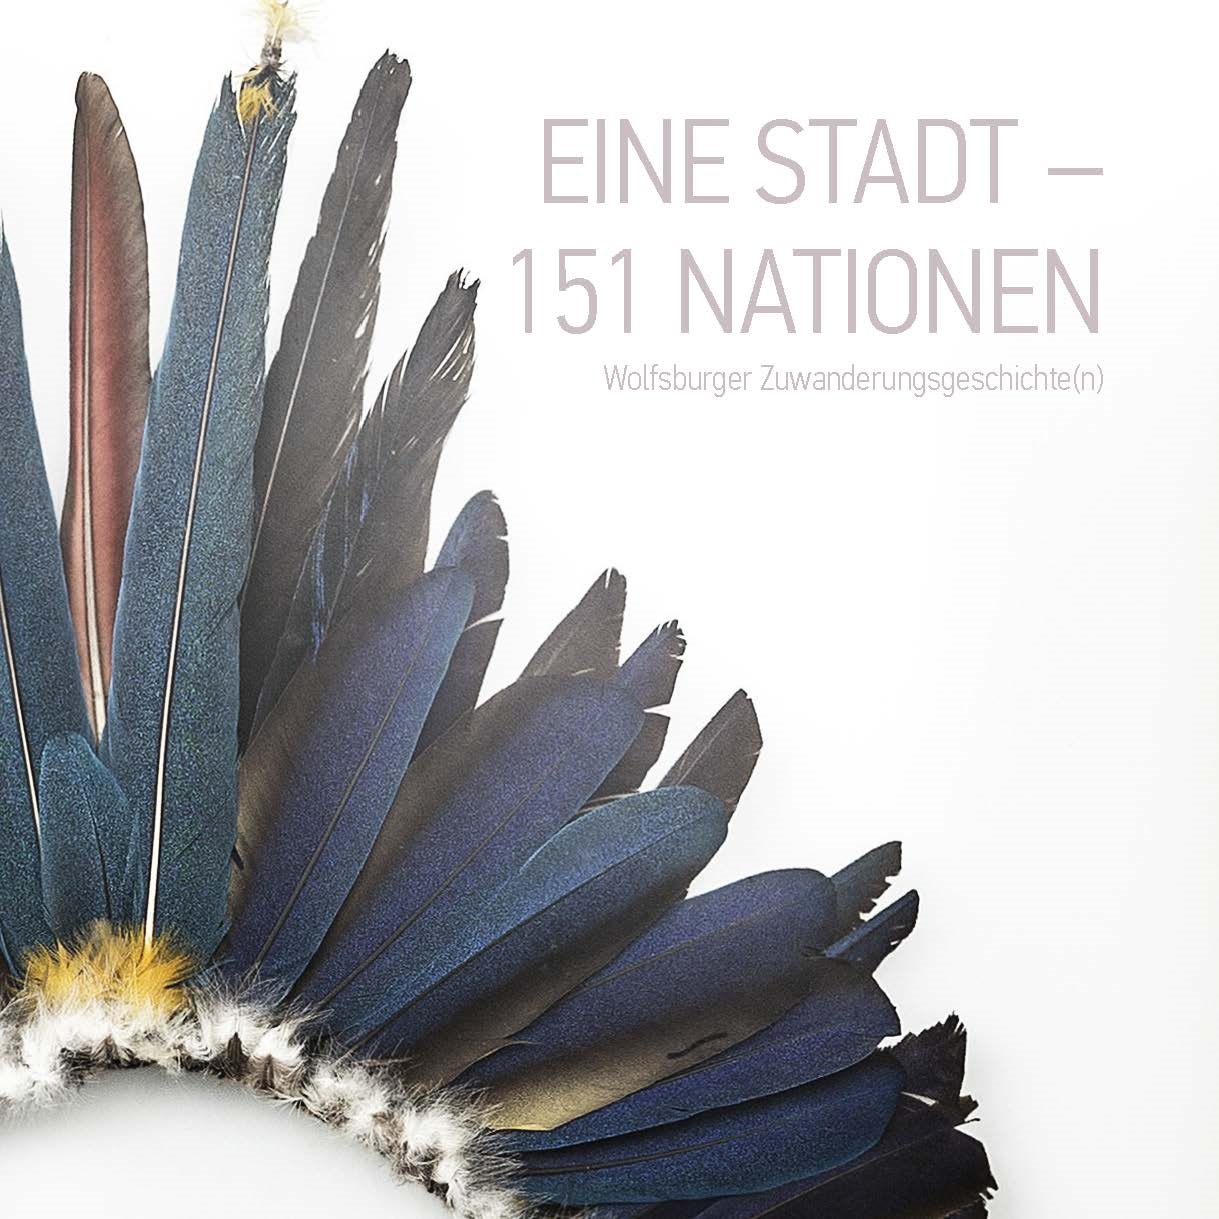 Titelblatt der Broschüre "Eine Stadt – 151 Nationen Wolfsburger Zuwanderungsgeschichte(n)"